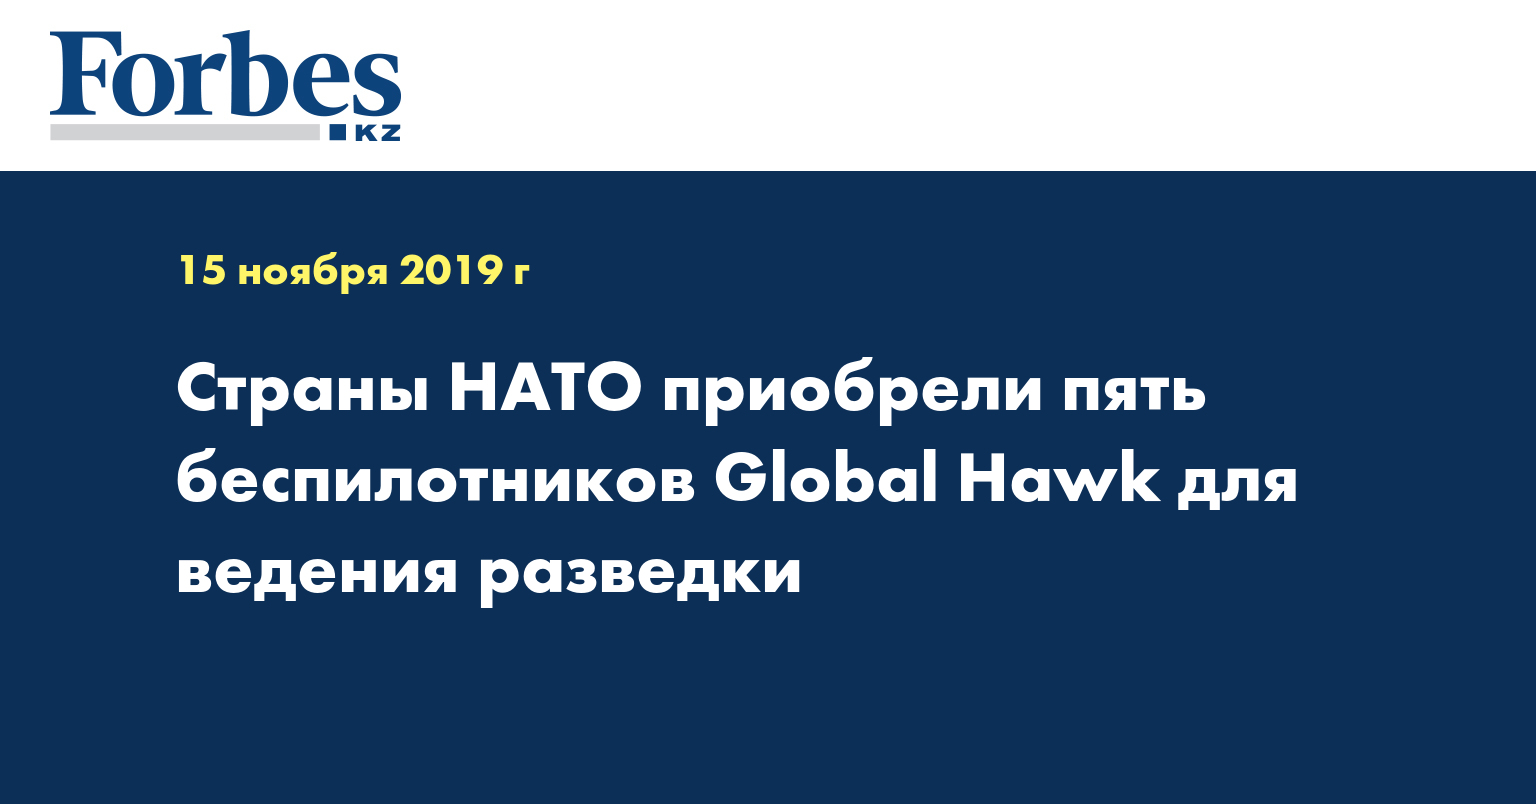 Страны НАТО приобрели пять беспилотников Global Hawk для ведения разведки